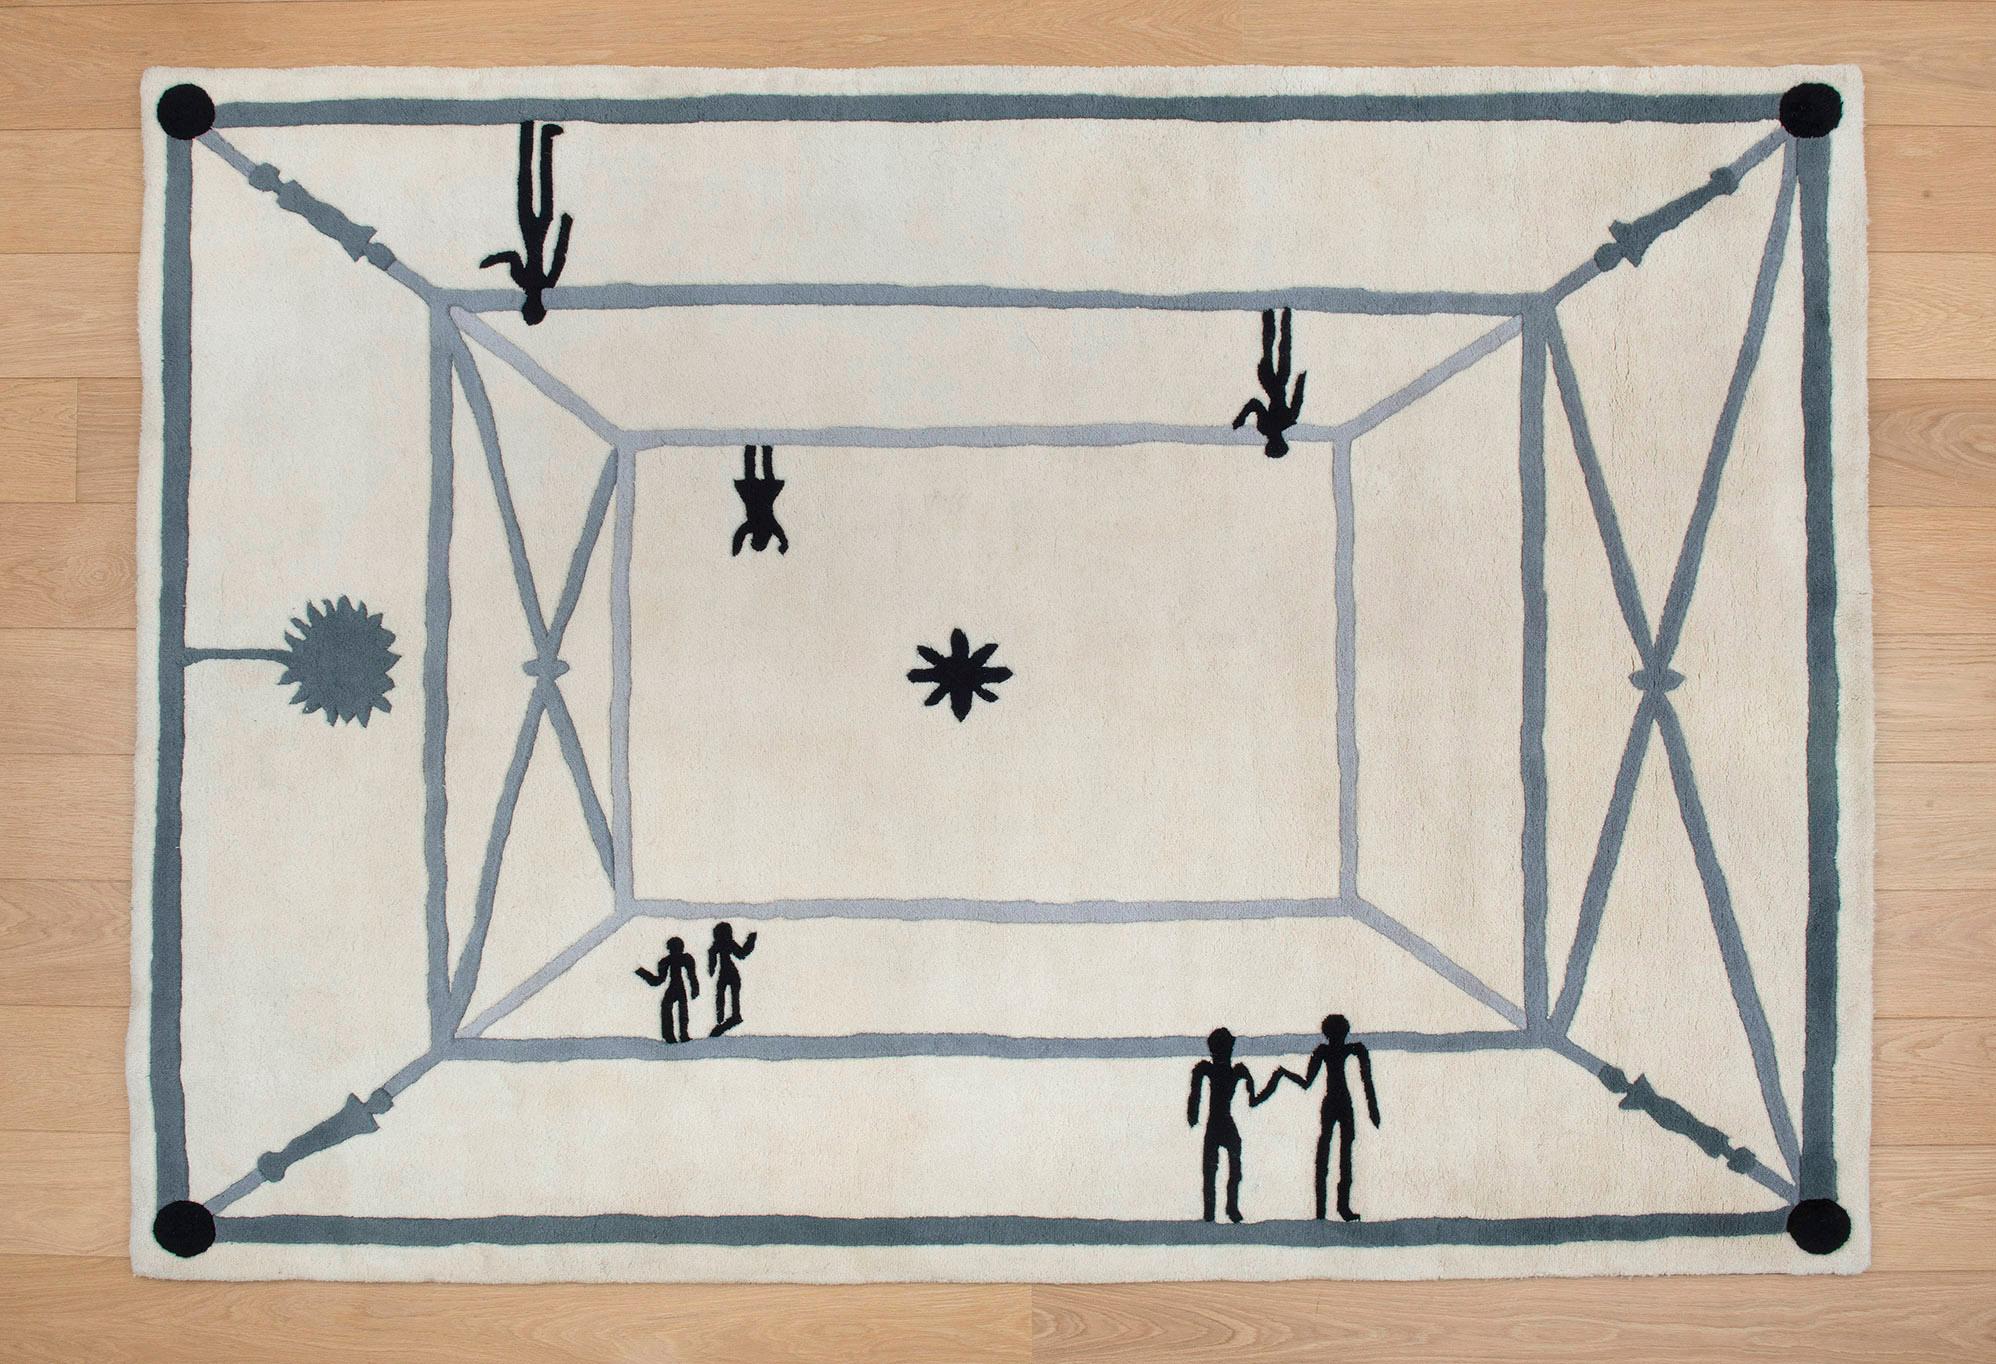 La Rencontre, Rug, Diego Giacometti, 1980's, Hand-woven, Design, Interior